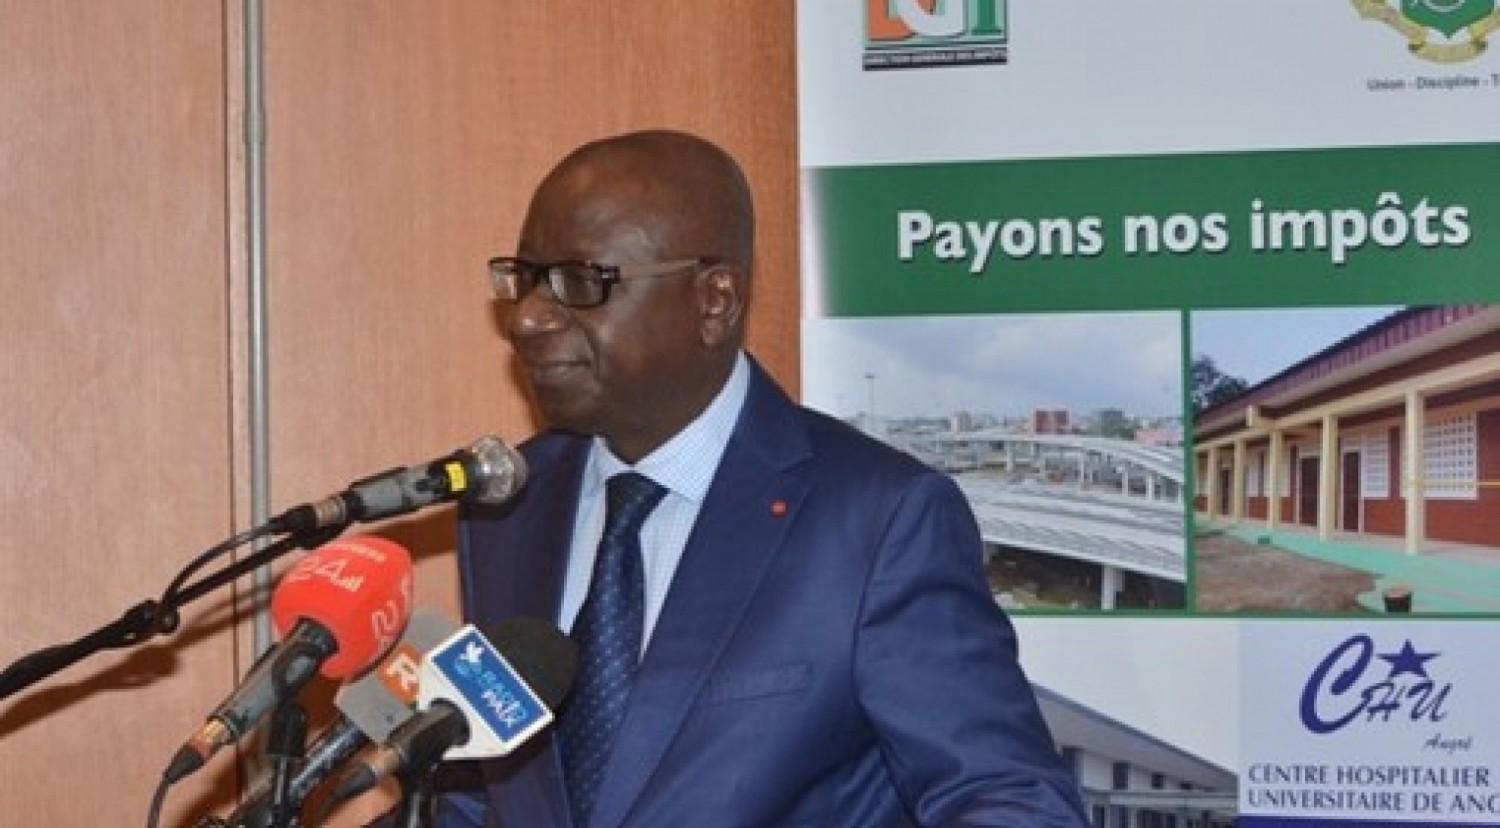 Côte d'Ivoire : Non-paiement des Impôts avant le 31 decembre, menace de la saisie des biens